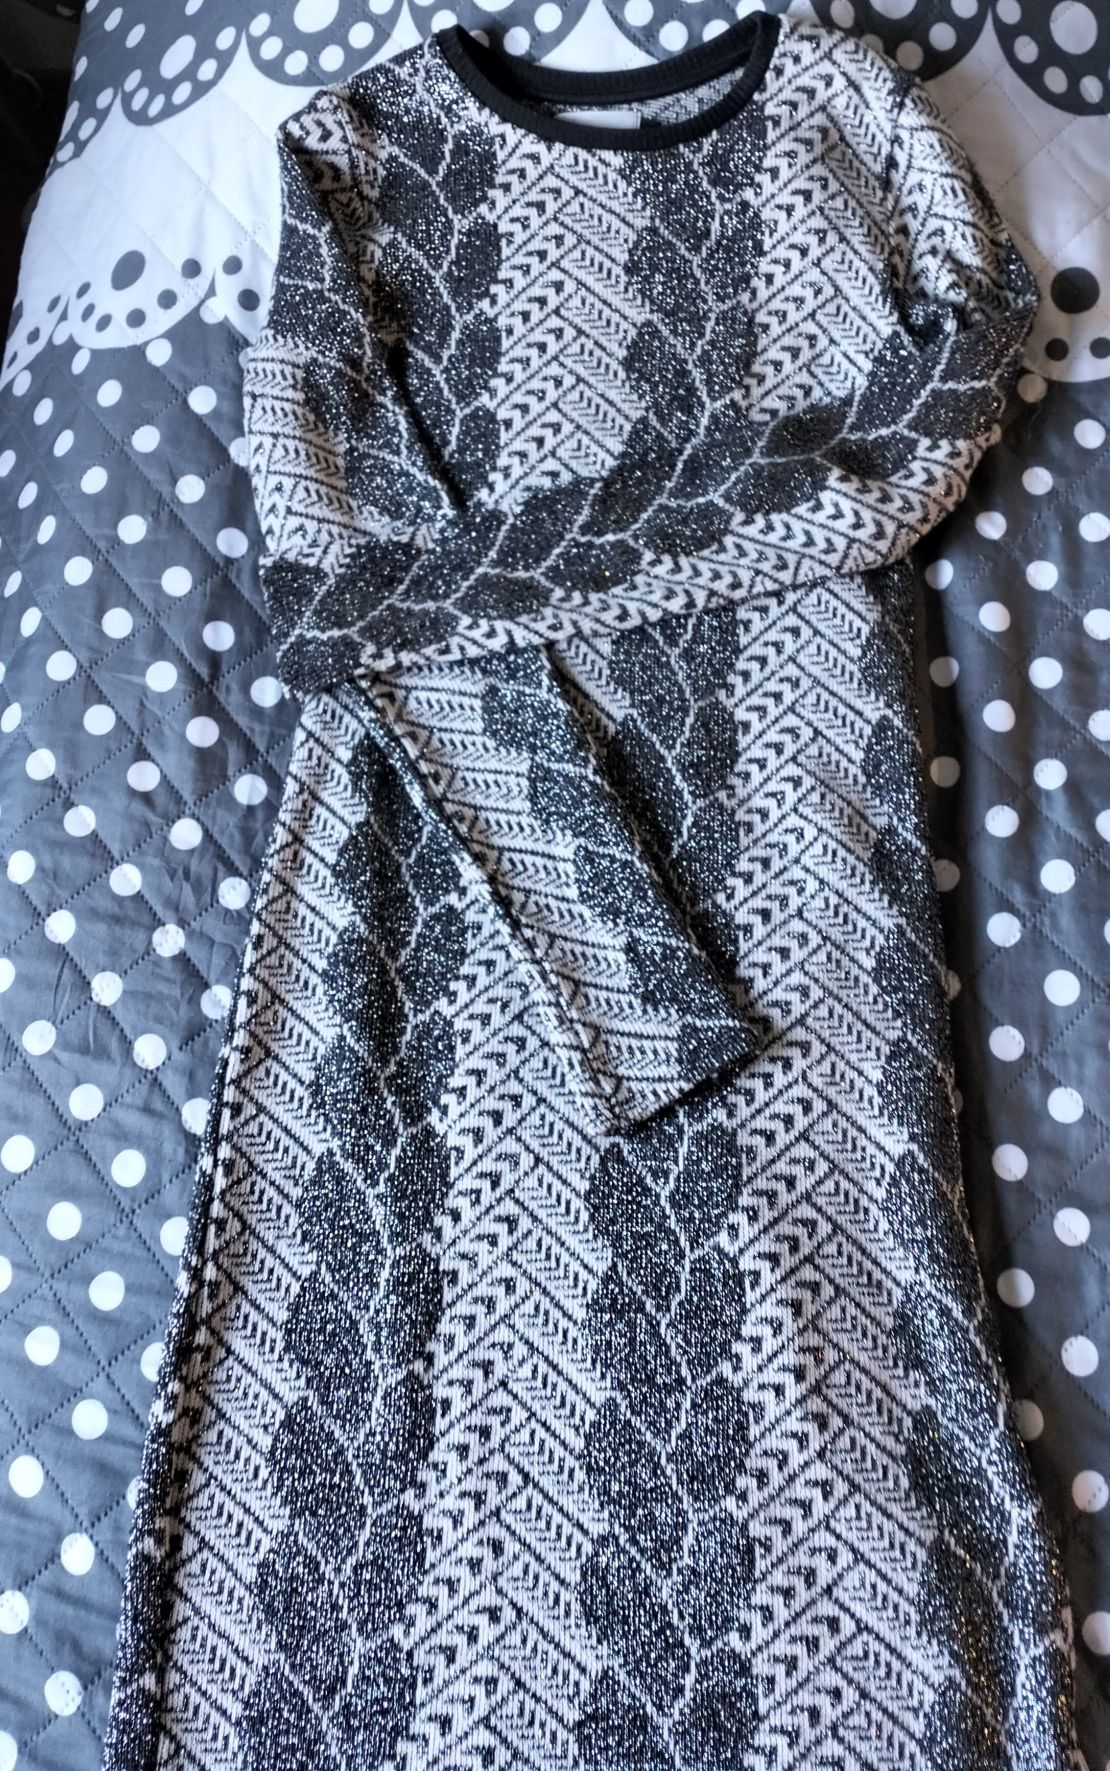 KappAhl, długa swetrowa sukienka błyszcząca, srebrno-czarna,r 36/S